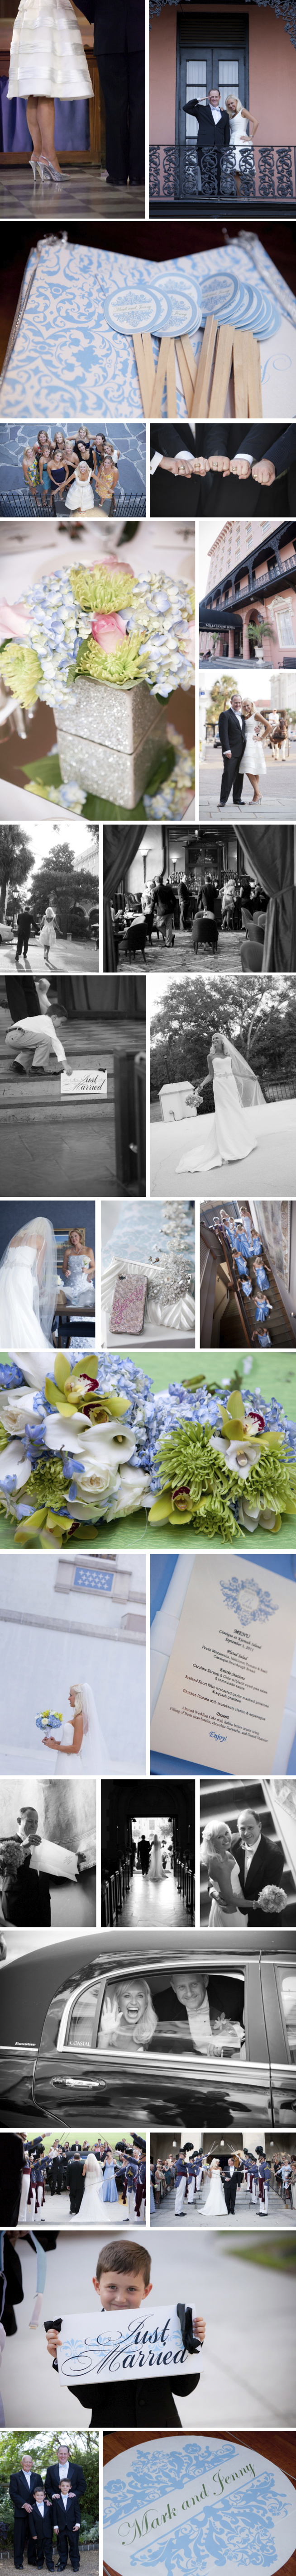 wedding ideas | wedding blogs